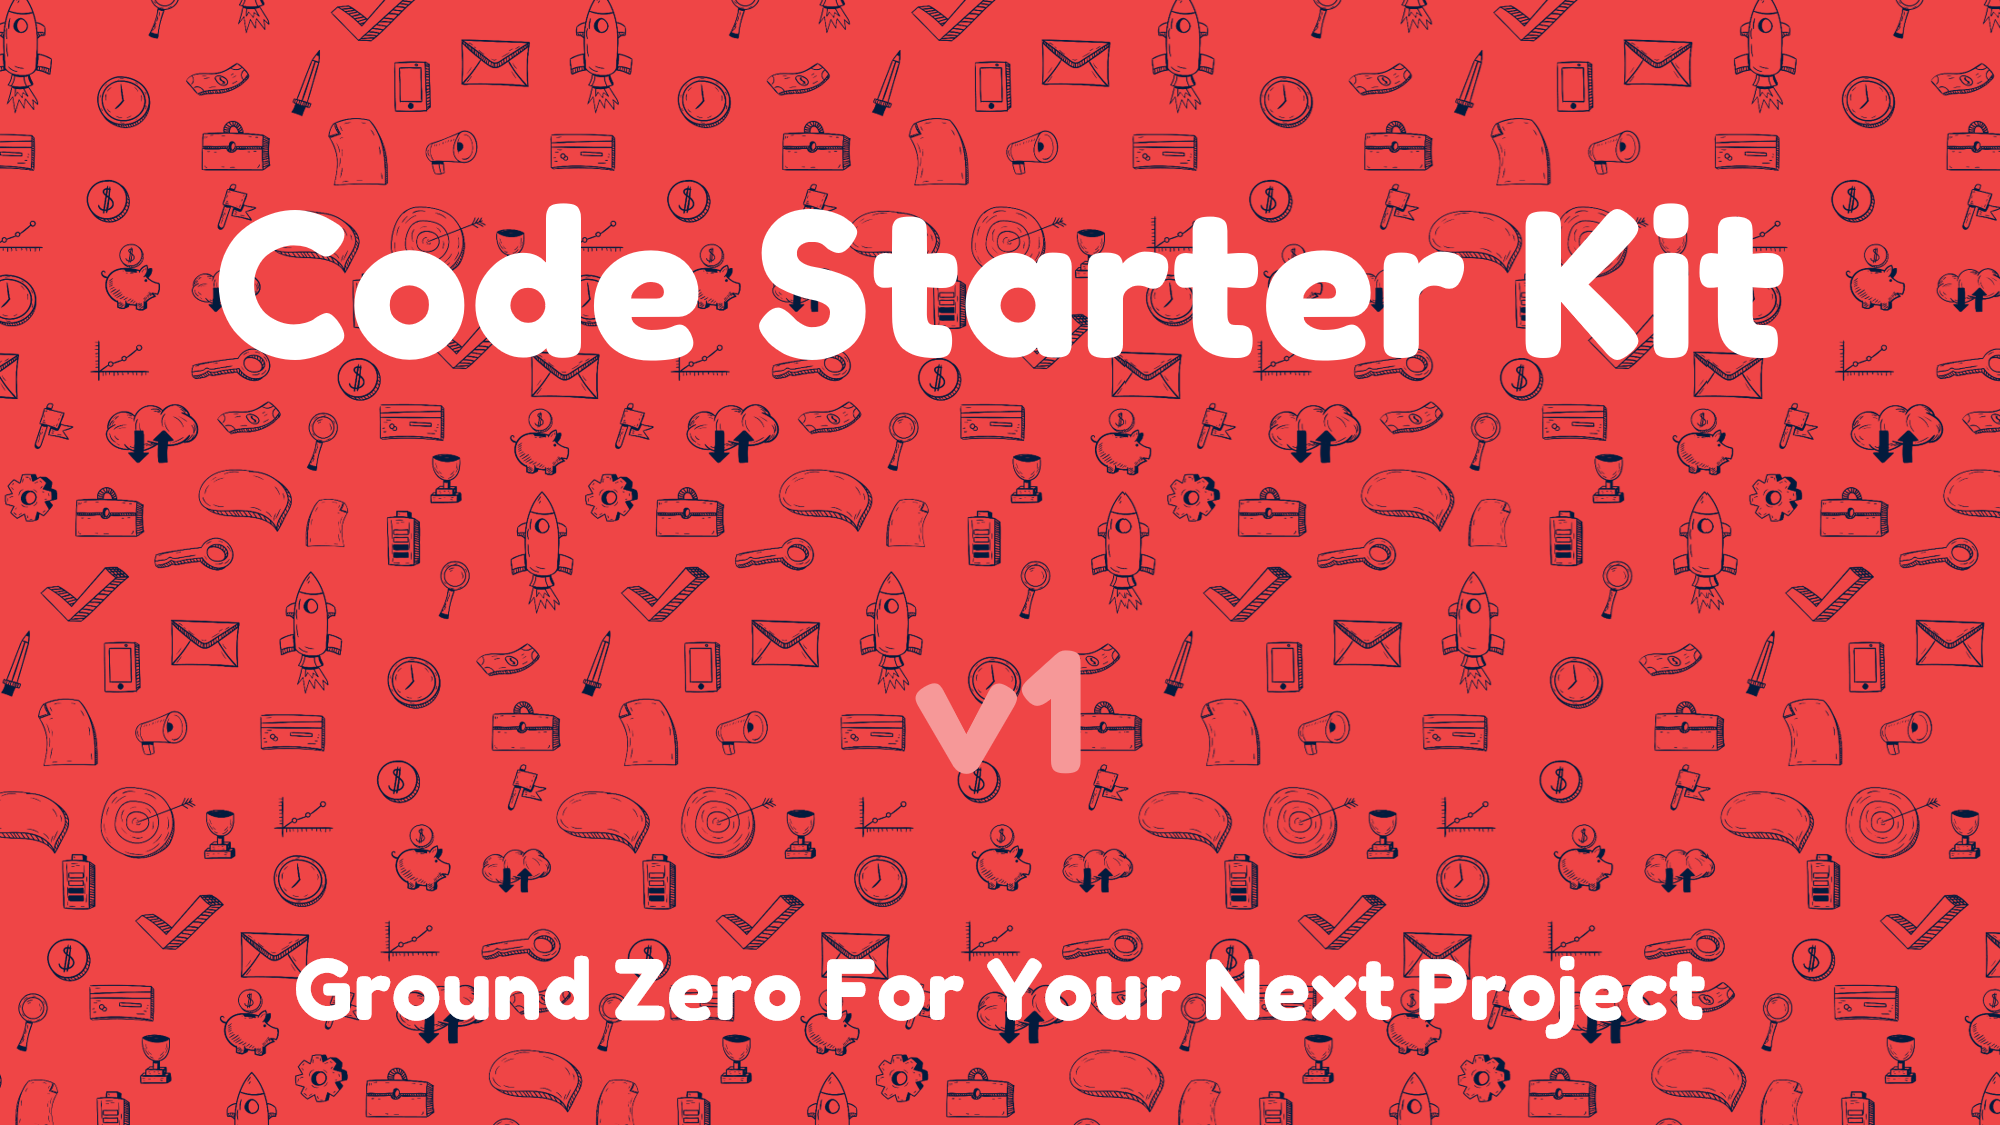 Visit Code Starter Kit for more info